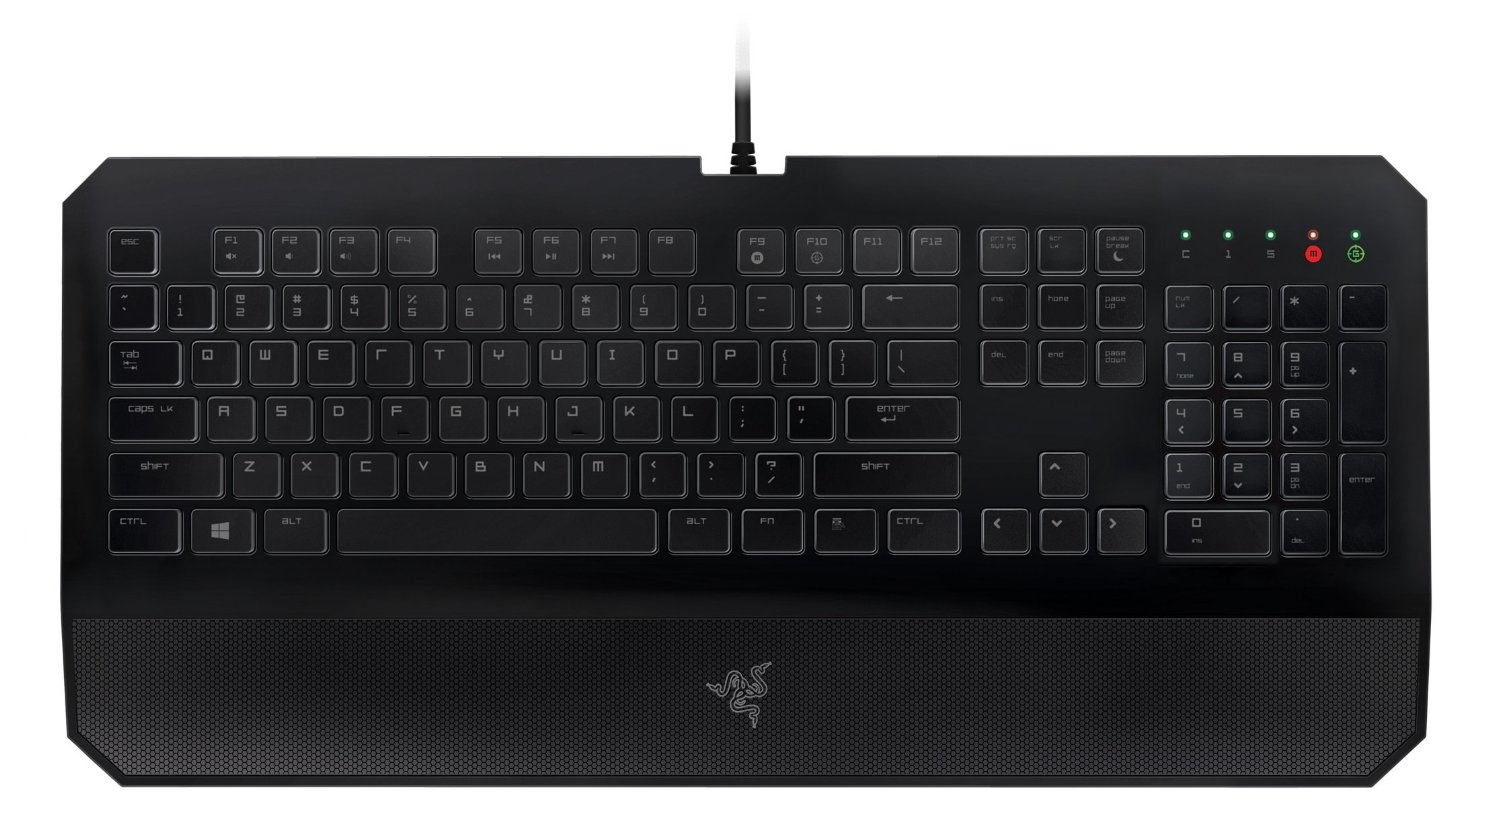 Razer Deathstalker Essential Gaming Keyboard